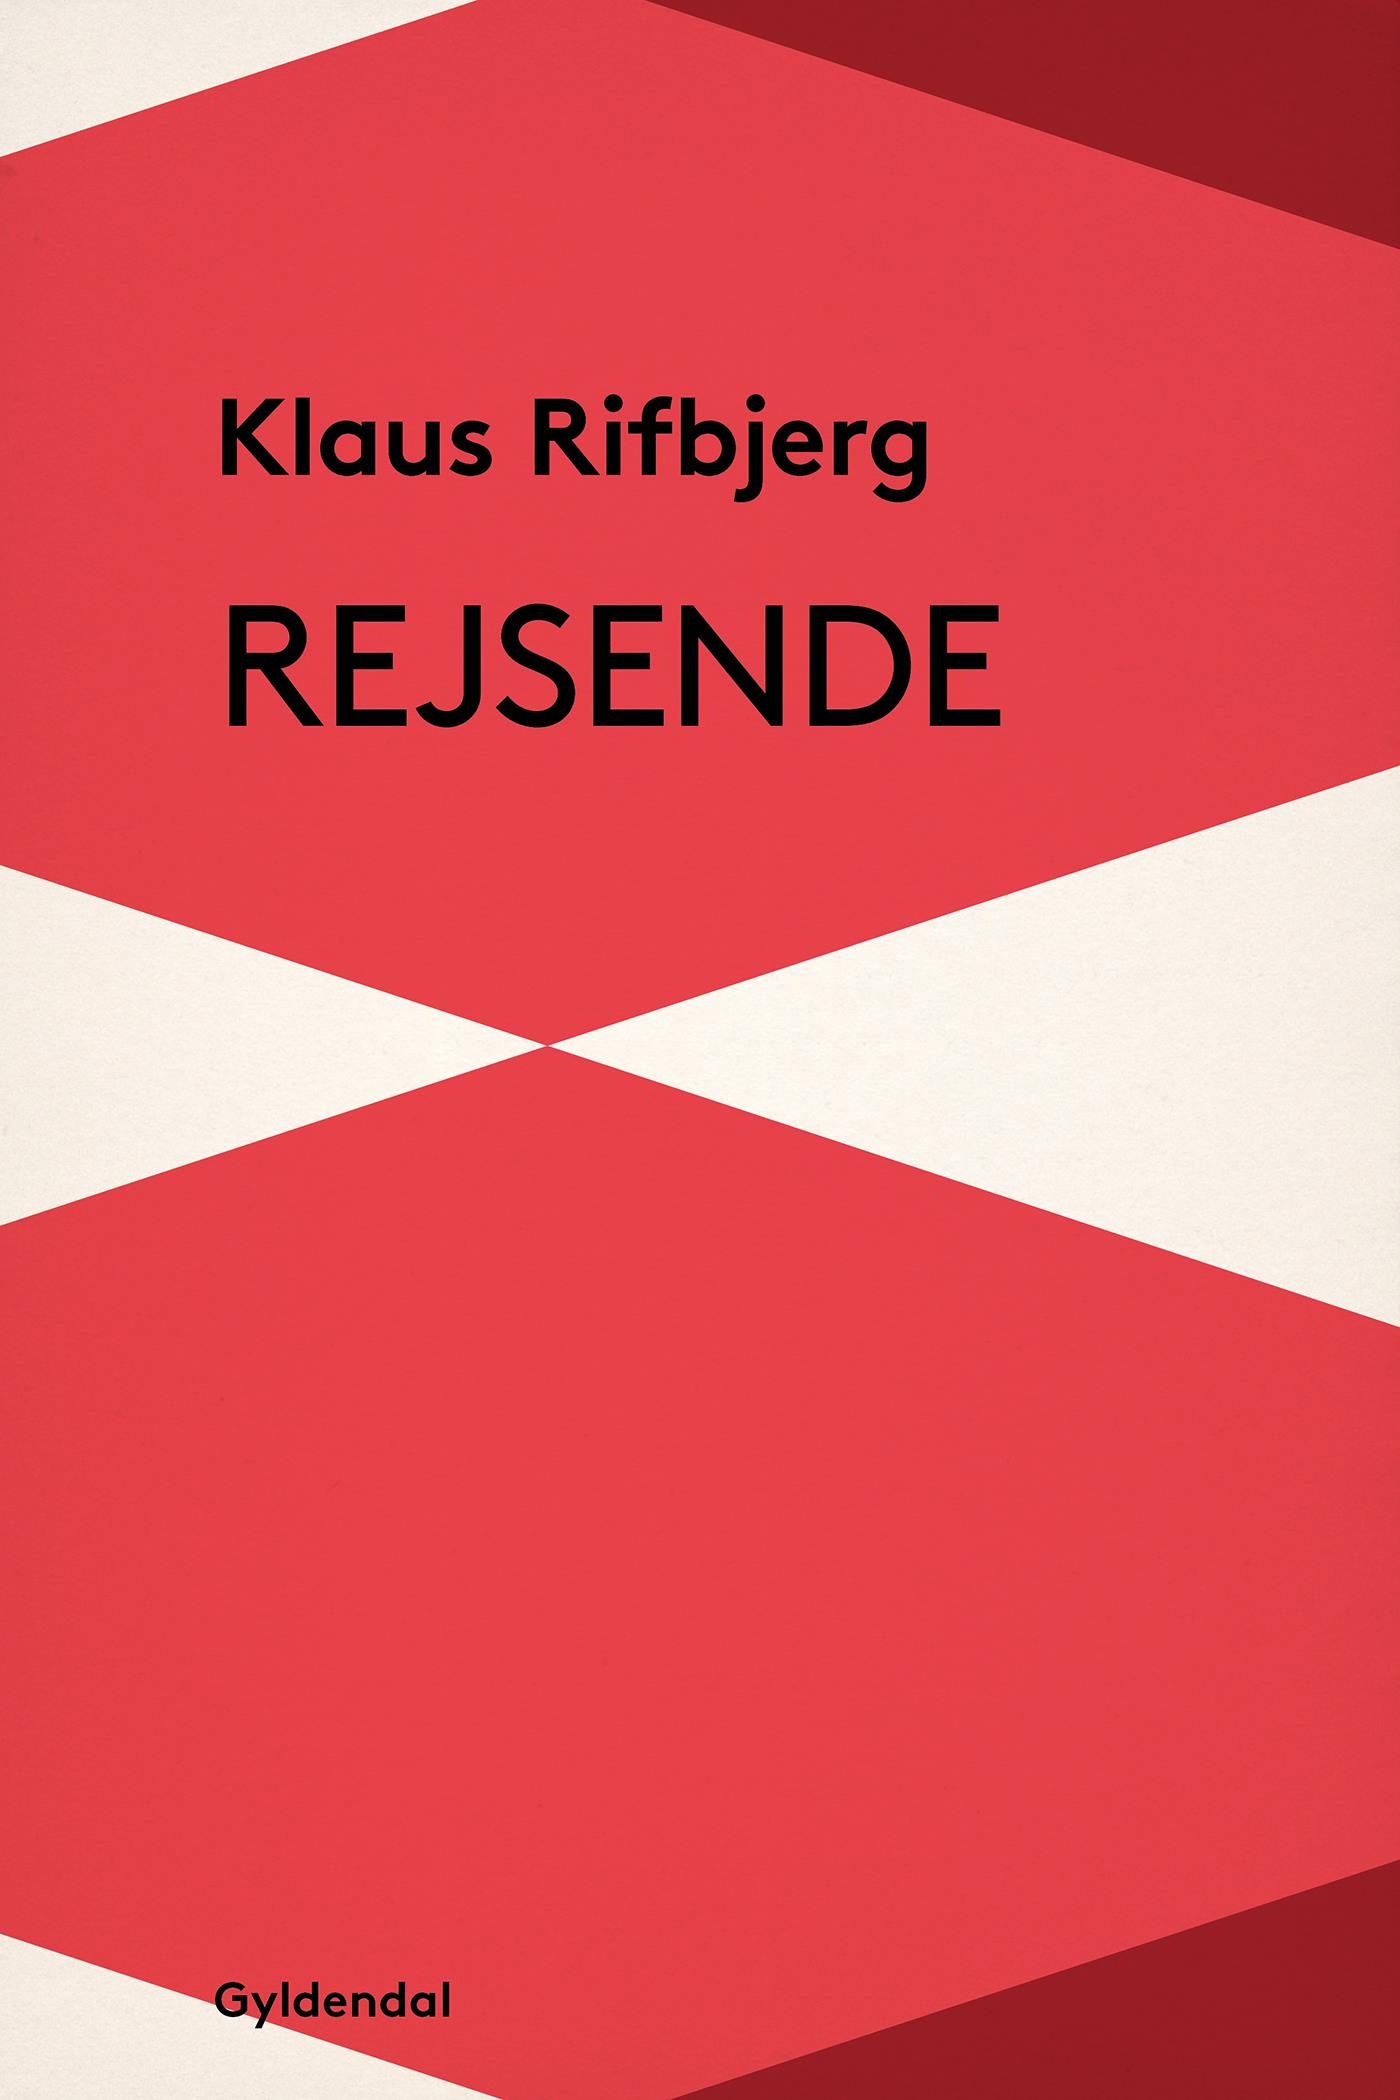 Rejsende, e-bok av Klaus Rifbjerg